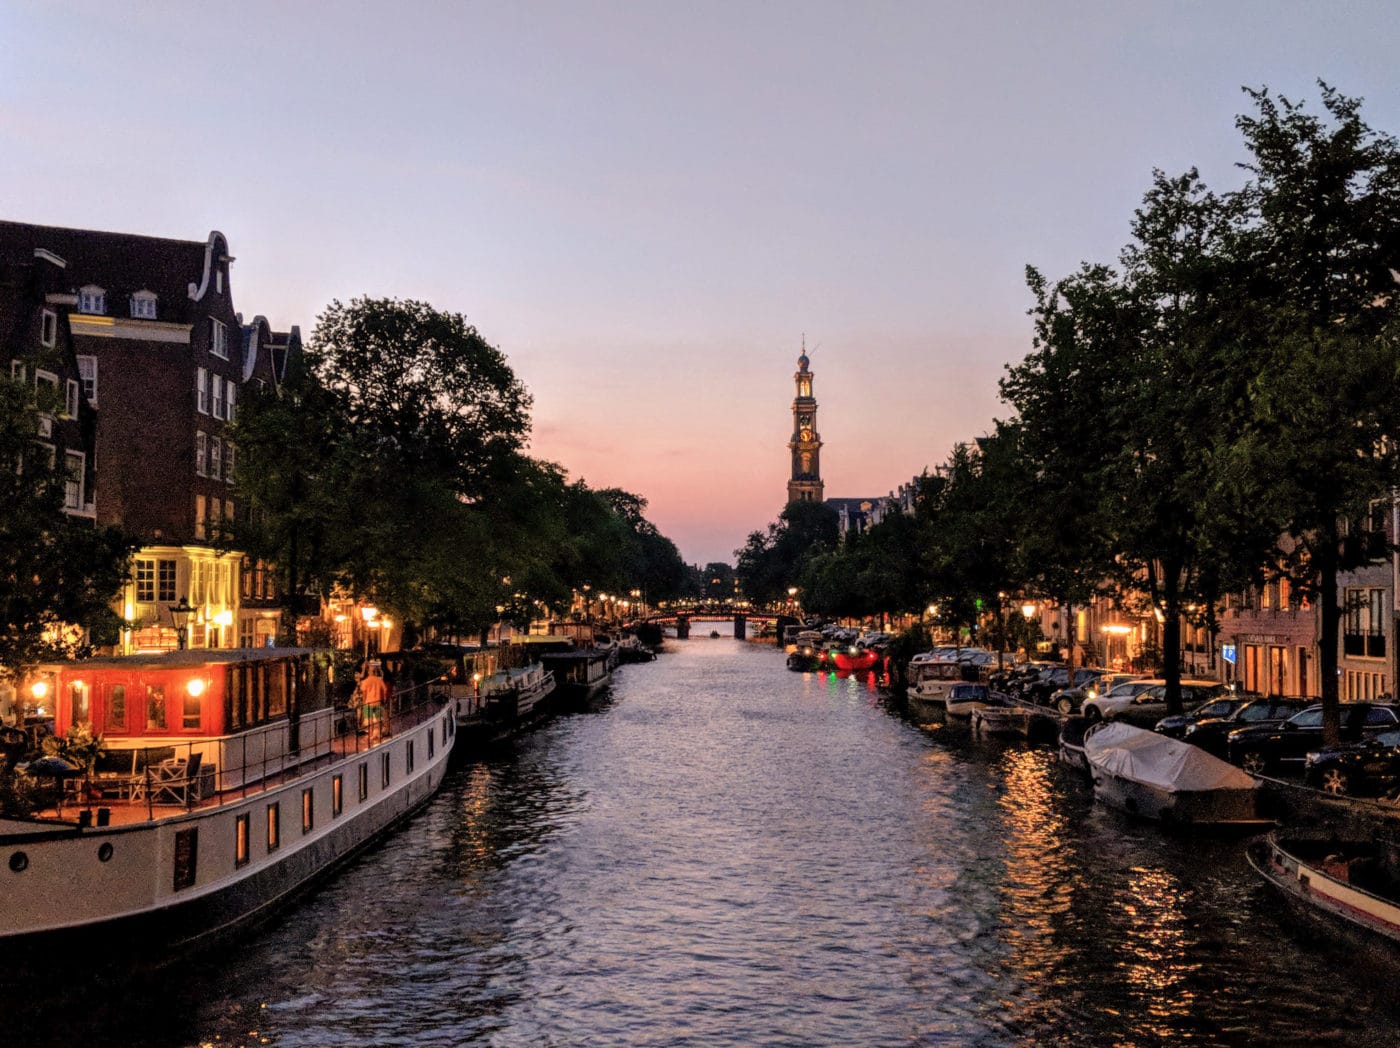 Beautiful Amsterdam at dusk